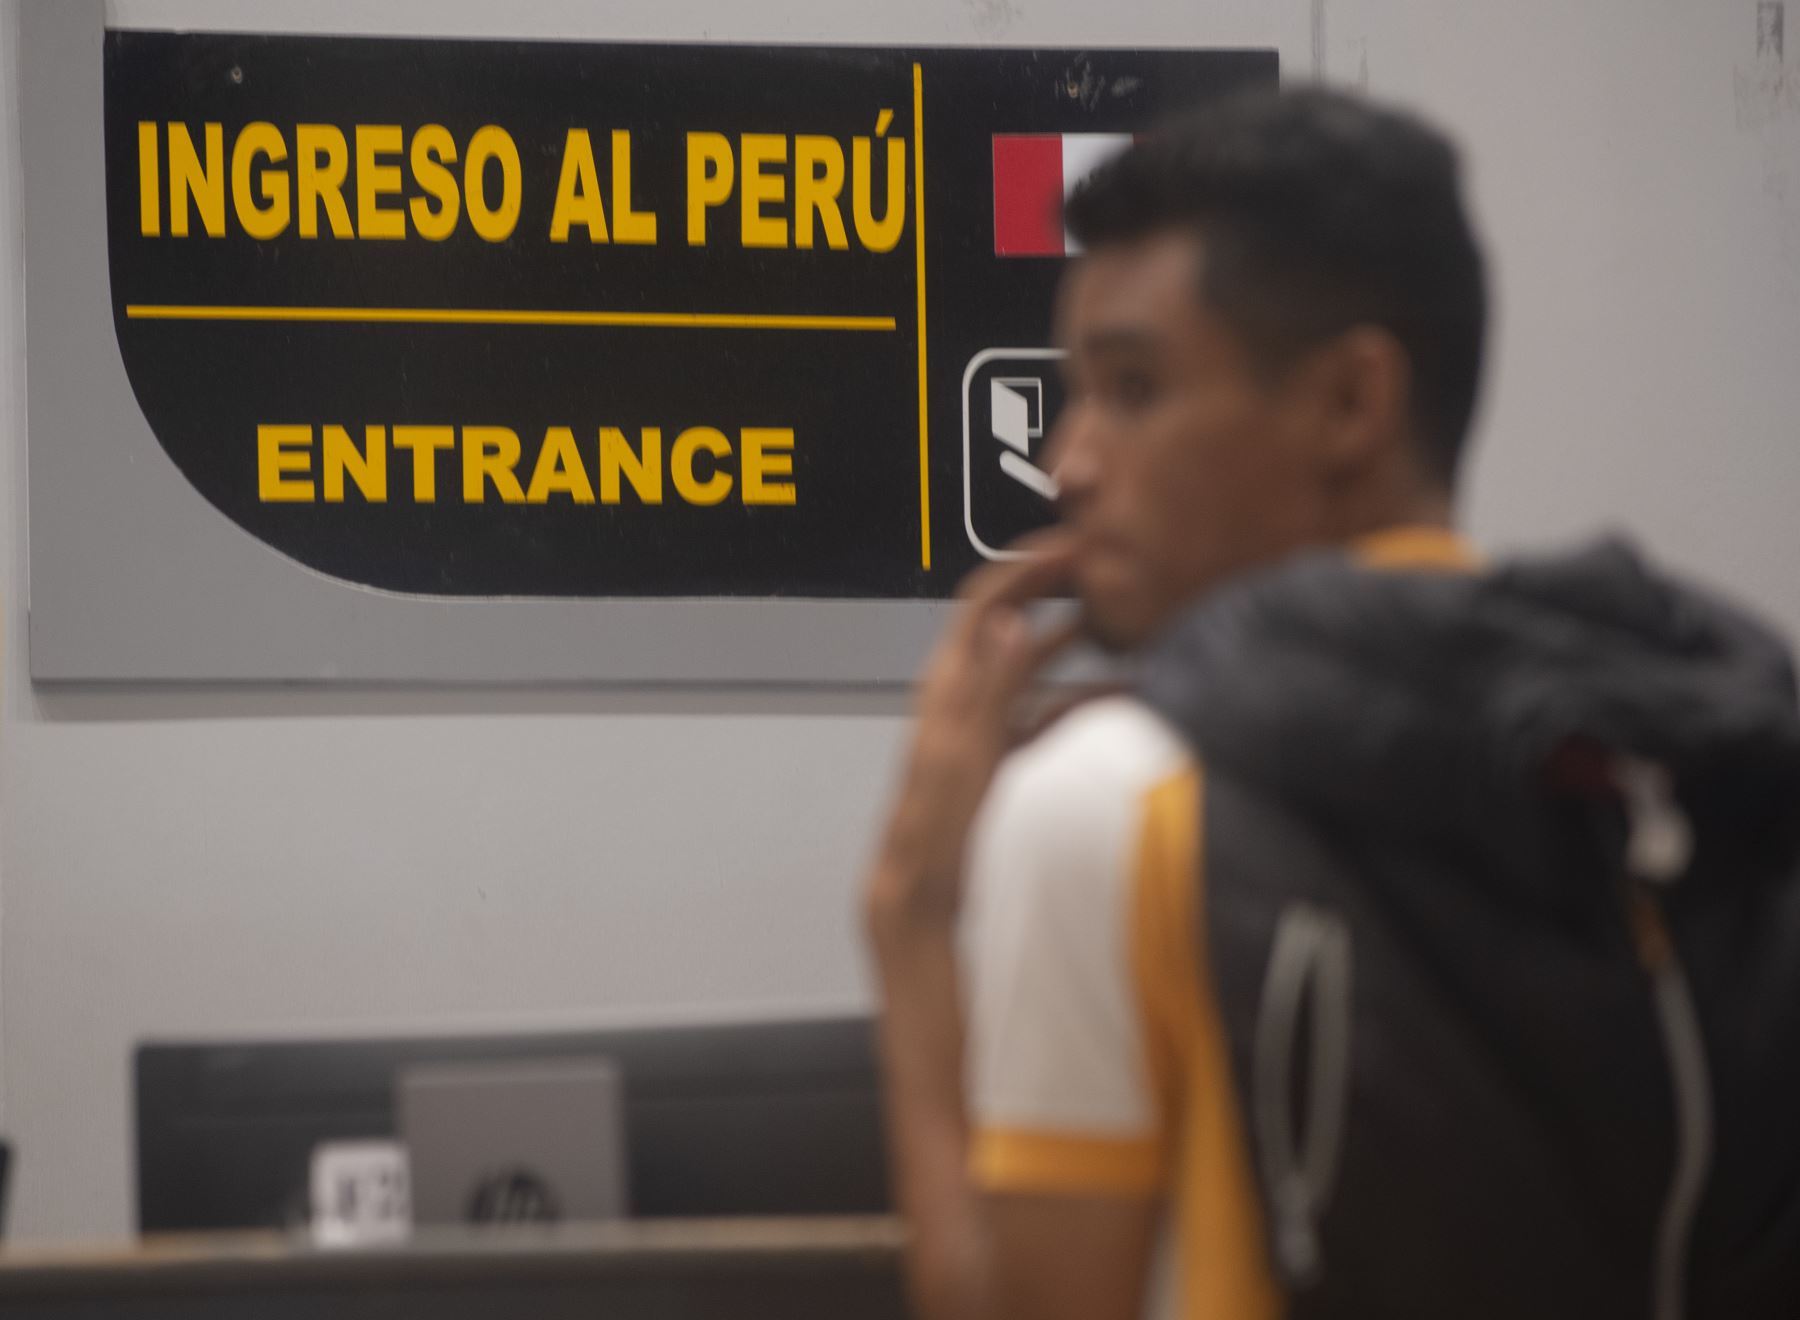 Los ciudadanos venezolanos presentan sus documentos para obtener una solicitud de refugio en el puesto fronterizo peruano en el centro binacional de atención de fronteras (CEBAF) en Tumbes. Foto: AFP